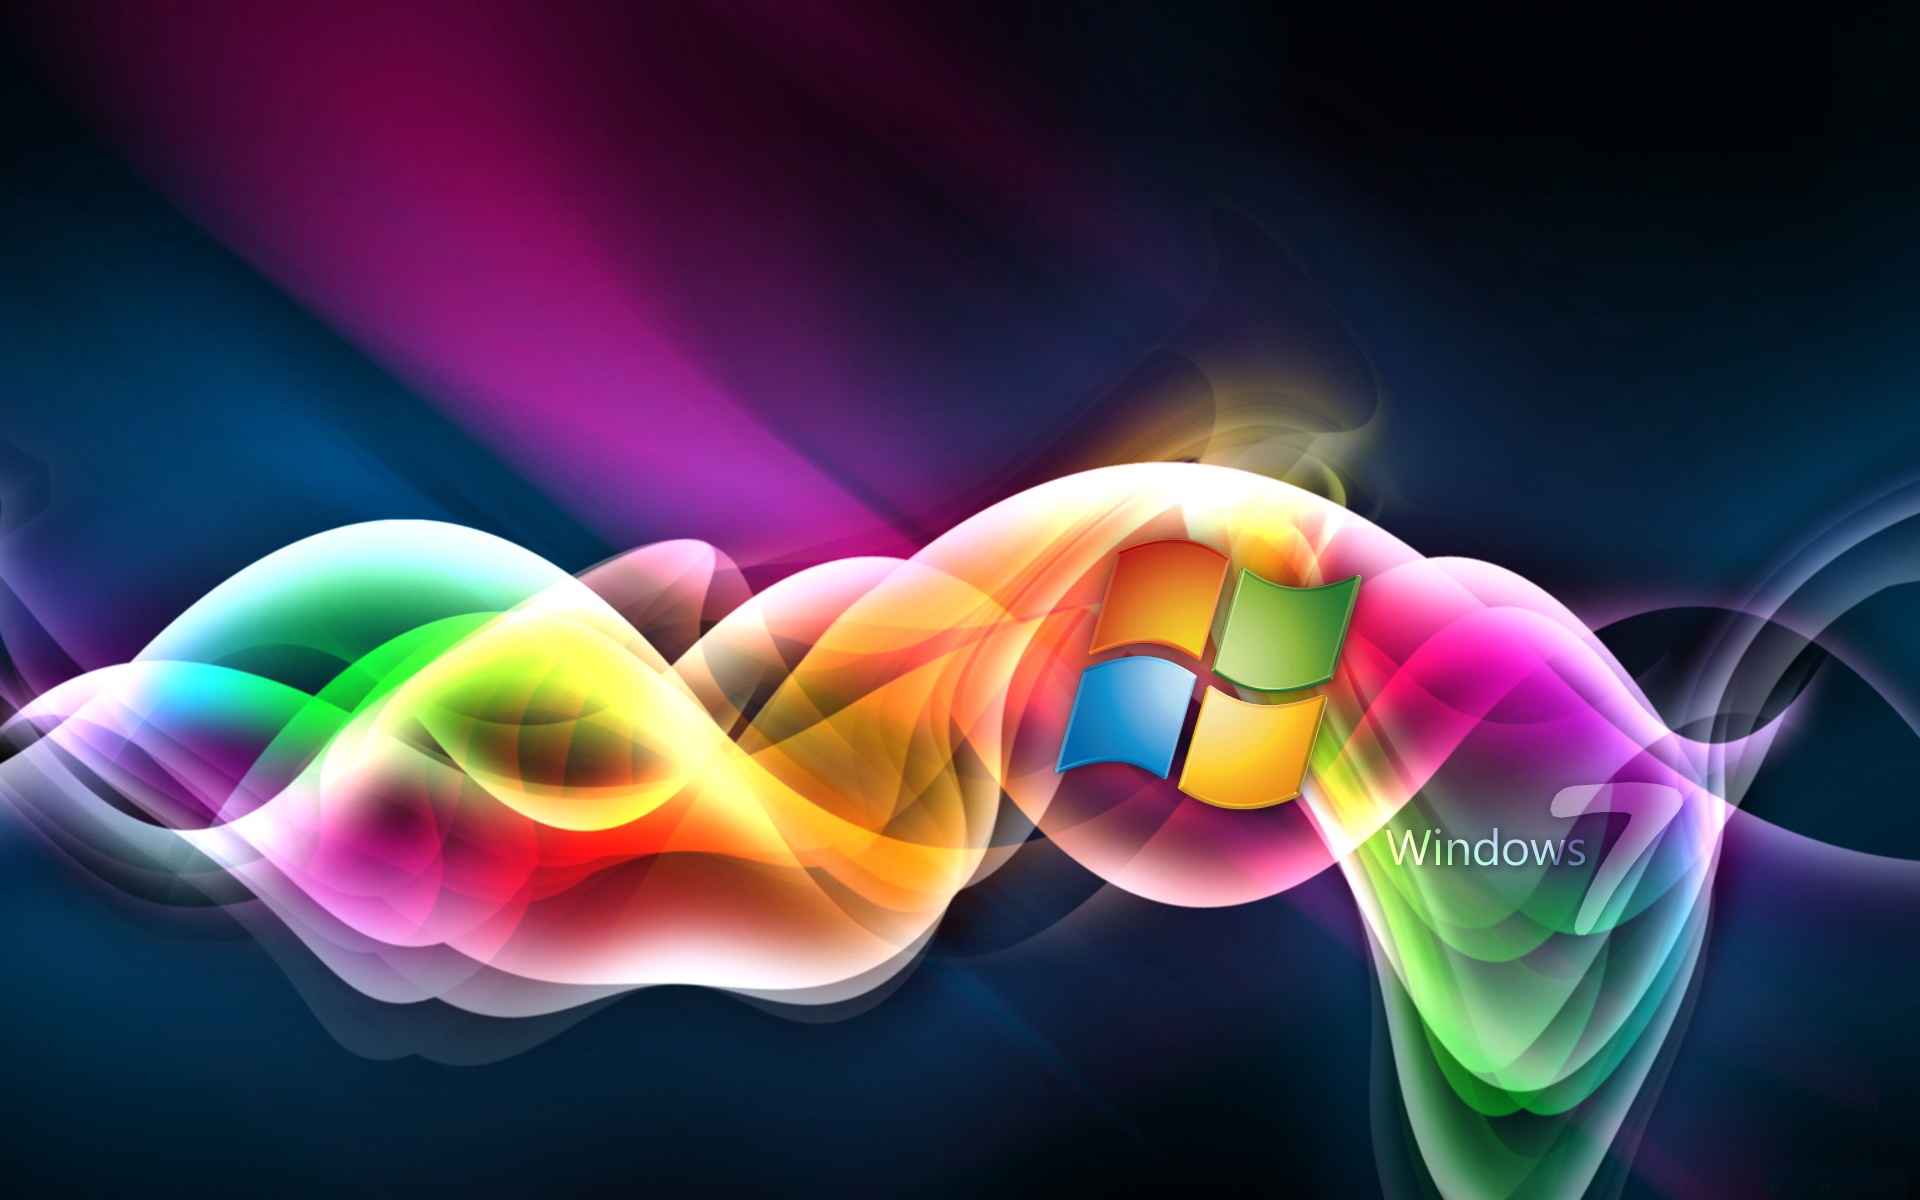 Hình nền máy tính Windows 7 mang đến sự đa dạng về màu sắc và hình ảnh cho người dùng. Cùng với chất lượng hình ảnh cao, những bức tranh động đẹp mắt sẽ làm bạn hài lòng và ấn tượng với thiết kế của màn hình.